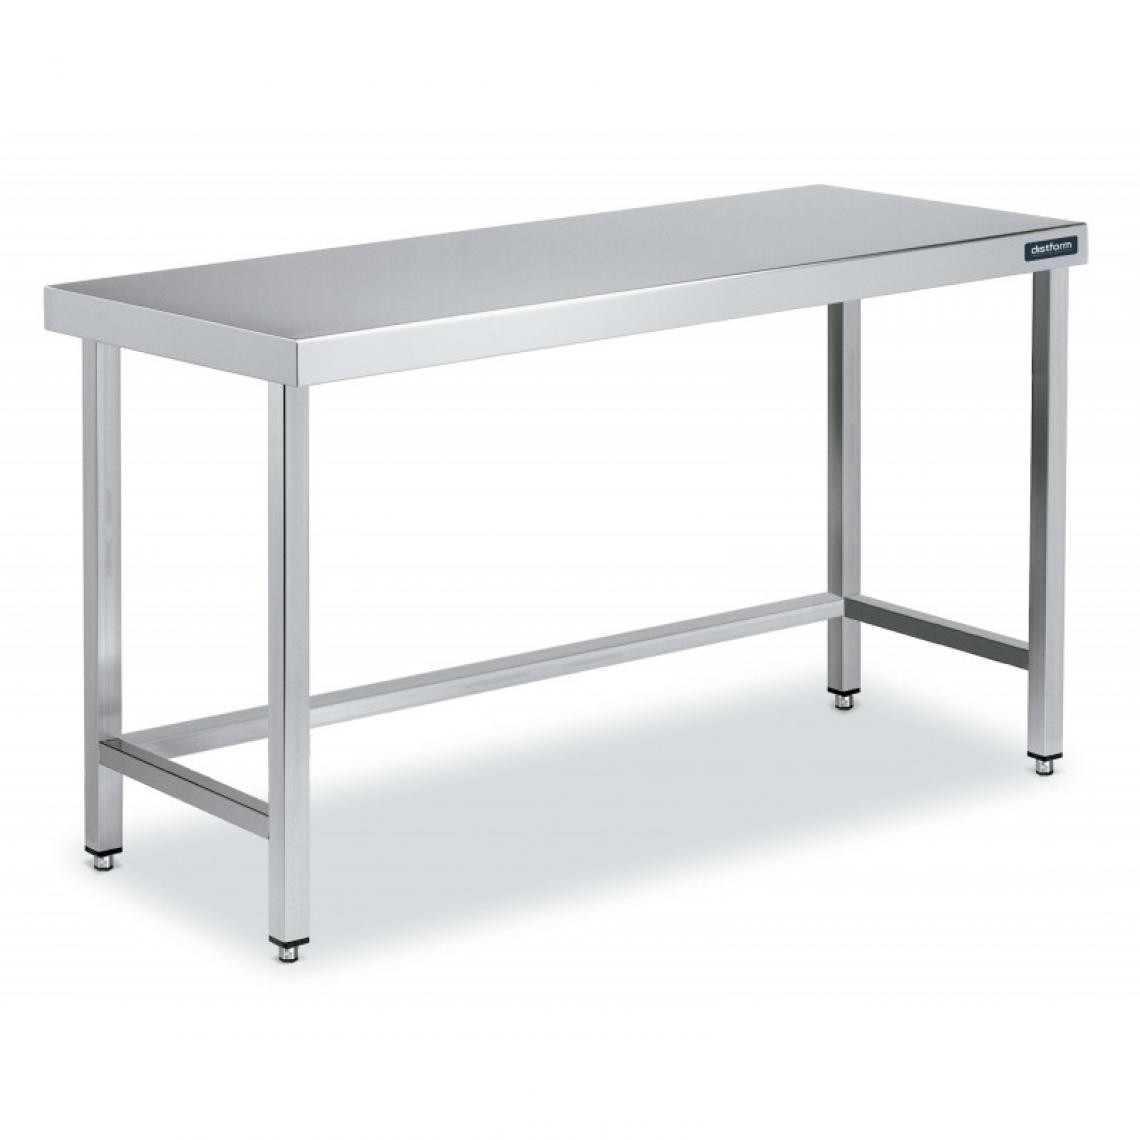 DISTFORM - Table Inox de Travail Centrale avec Renforts - Gamme 550 - Distform - Acier inoxydable2400x550 - Tables à manger